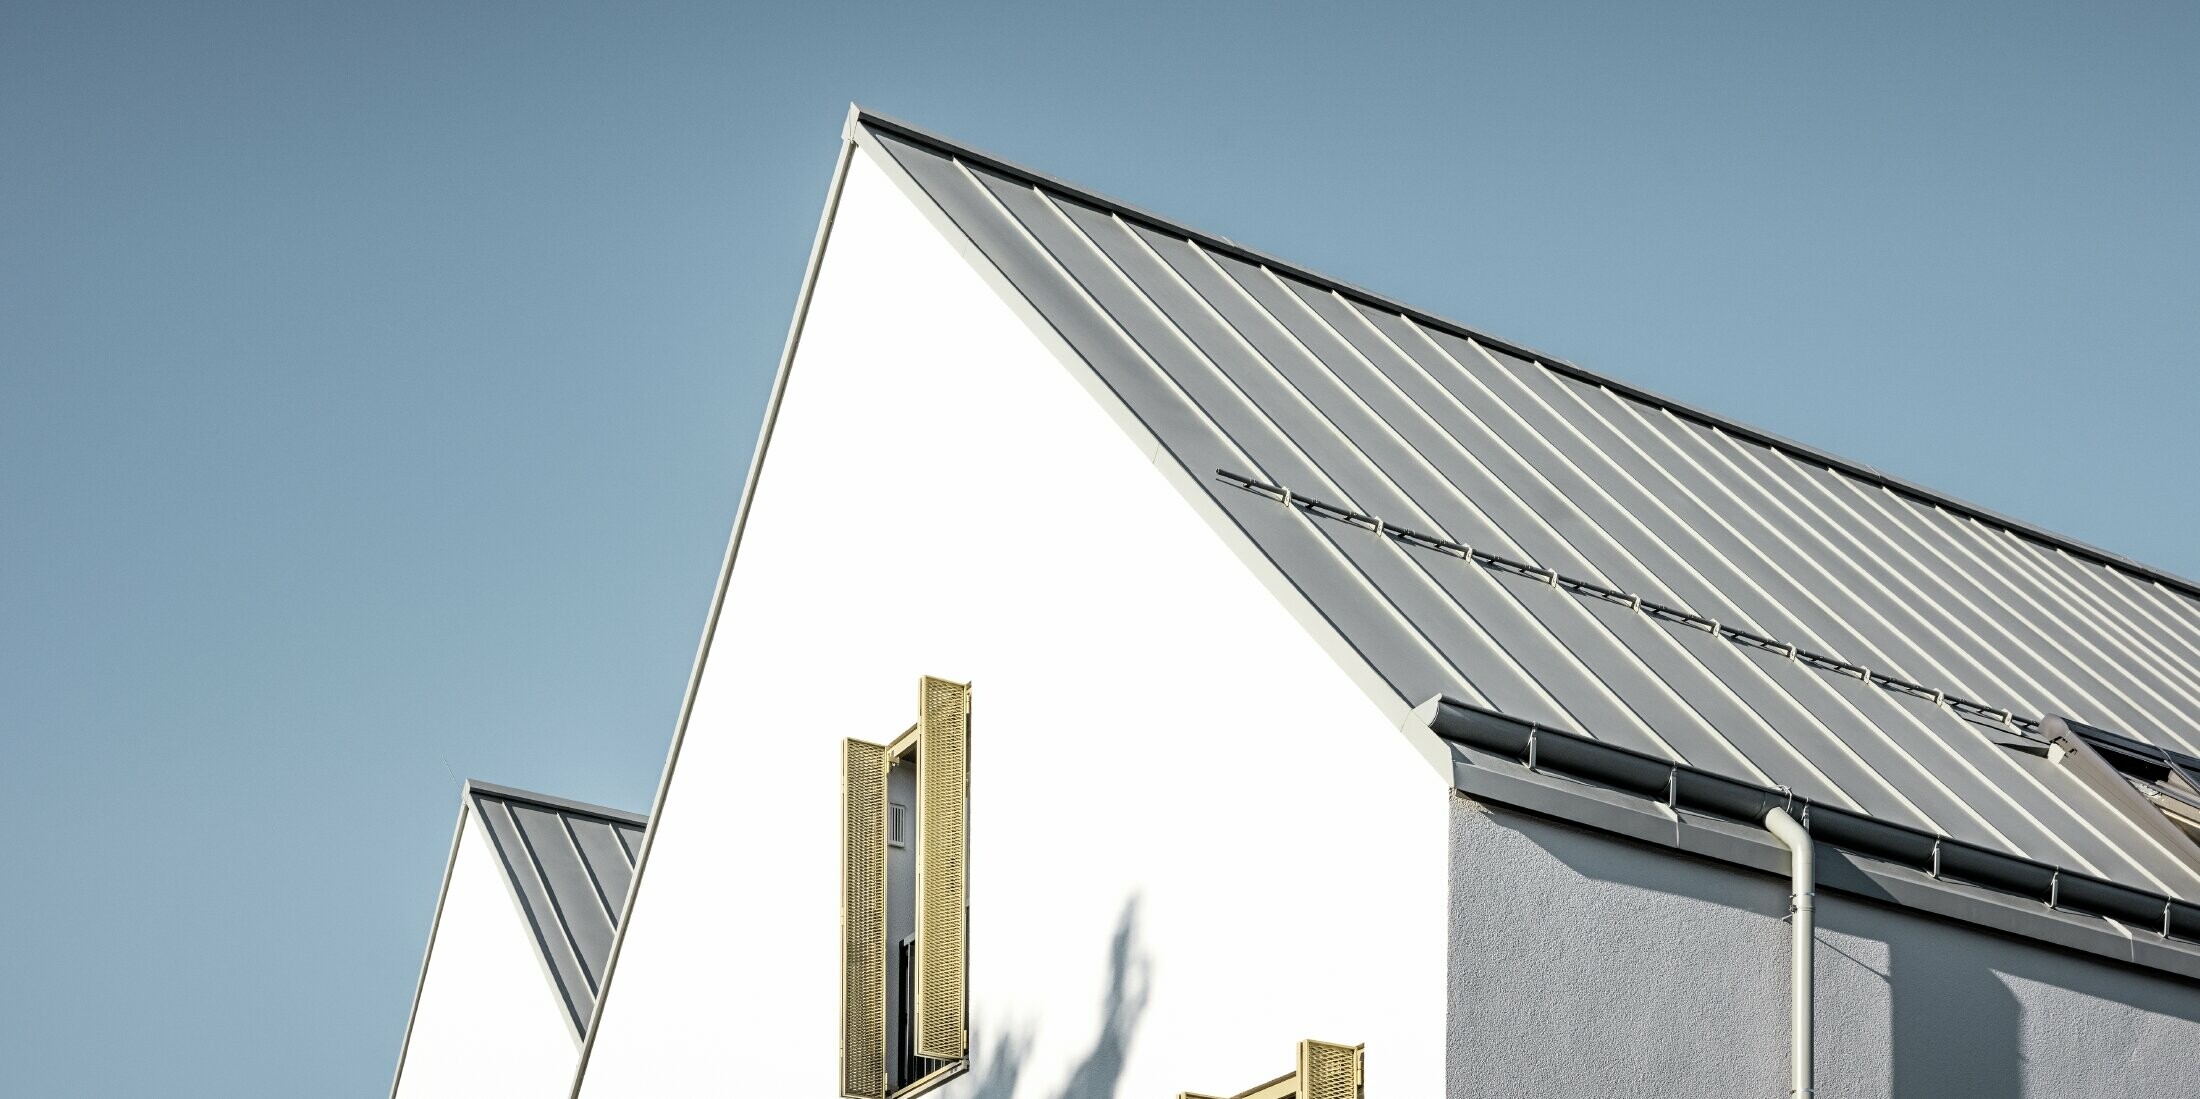 Sedlová strecha bez previsnutej strechy, zakrytá s PREFALZ vo farebnom vyhotovení P.10 zinkovošedá s PREFA nástrešným žľabom